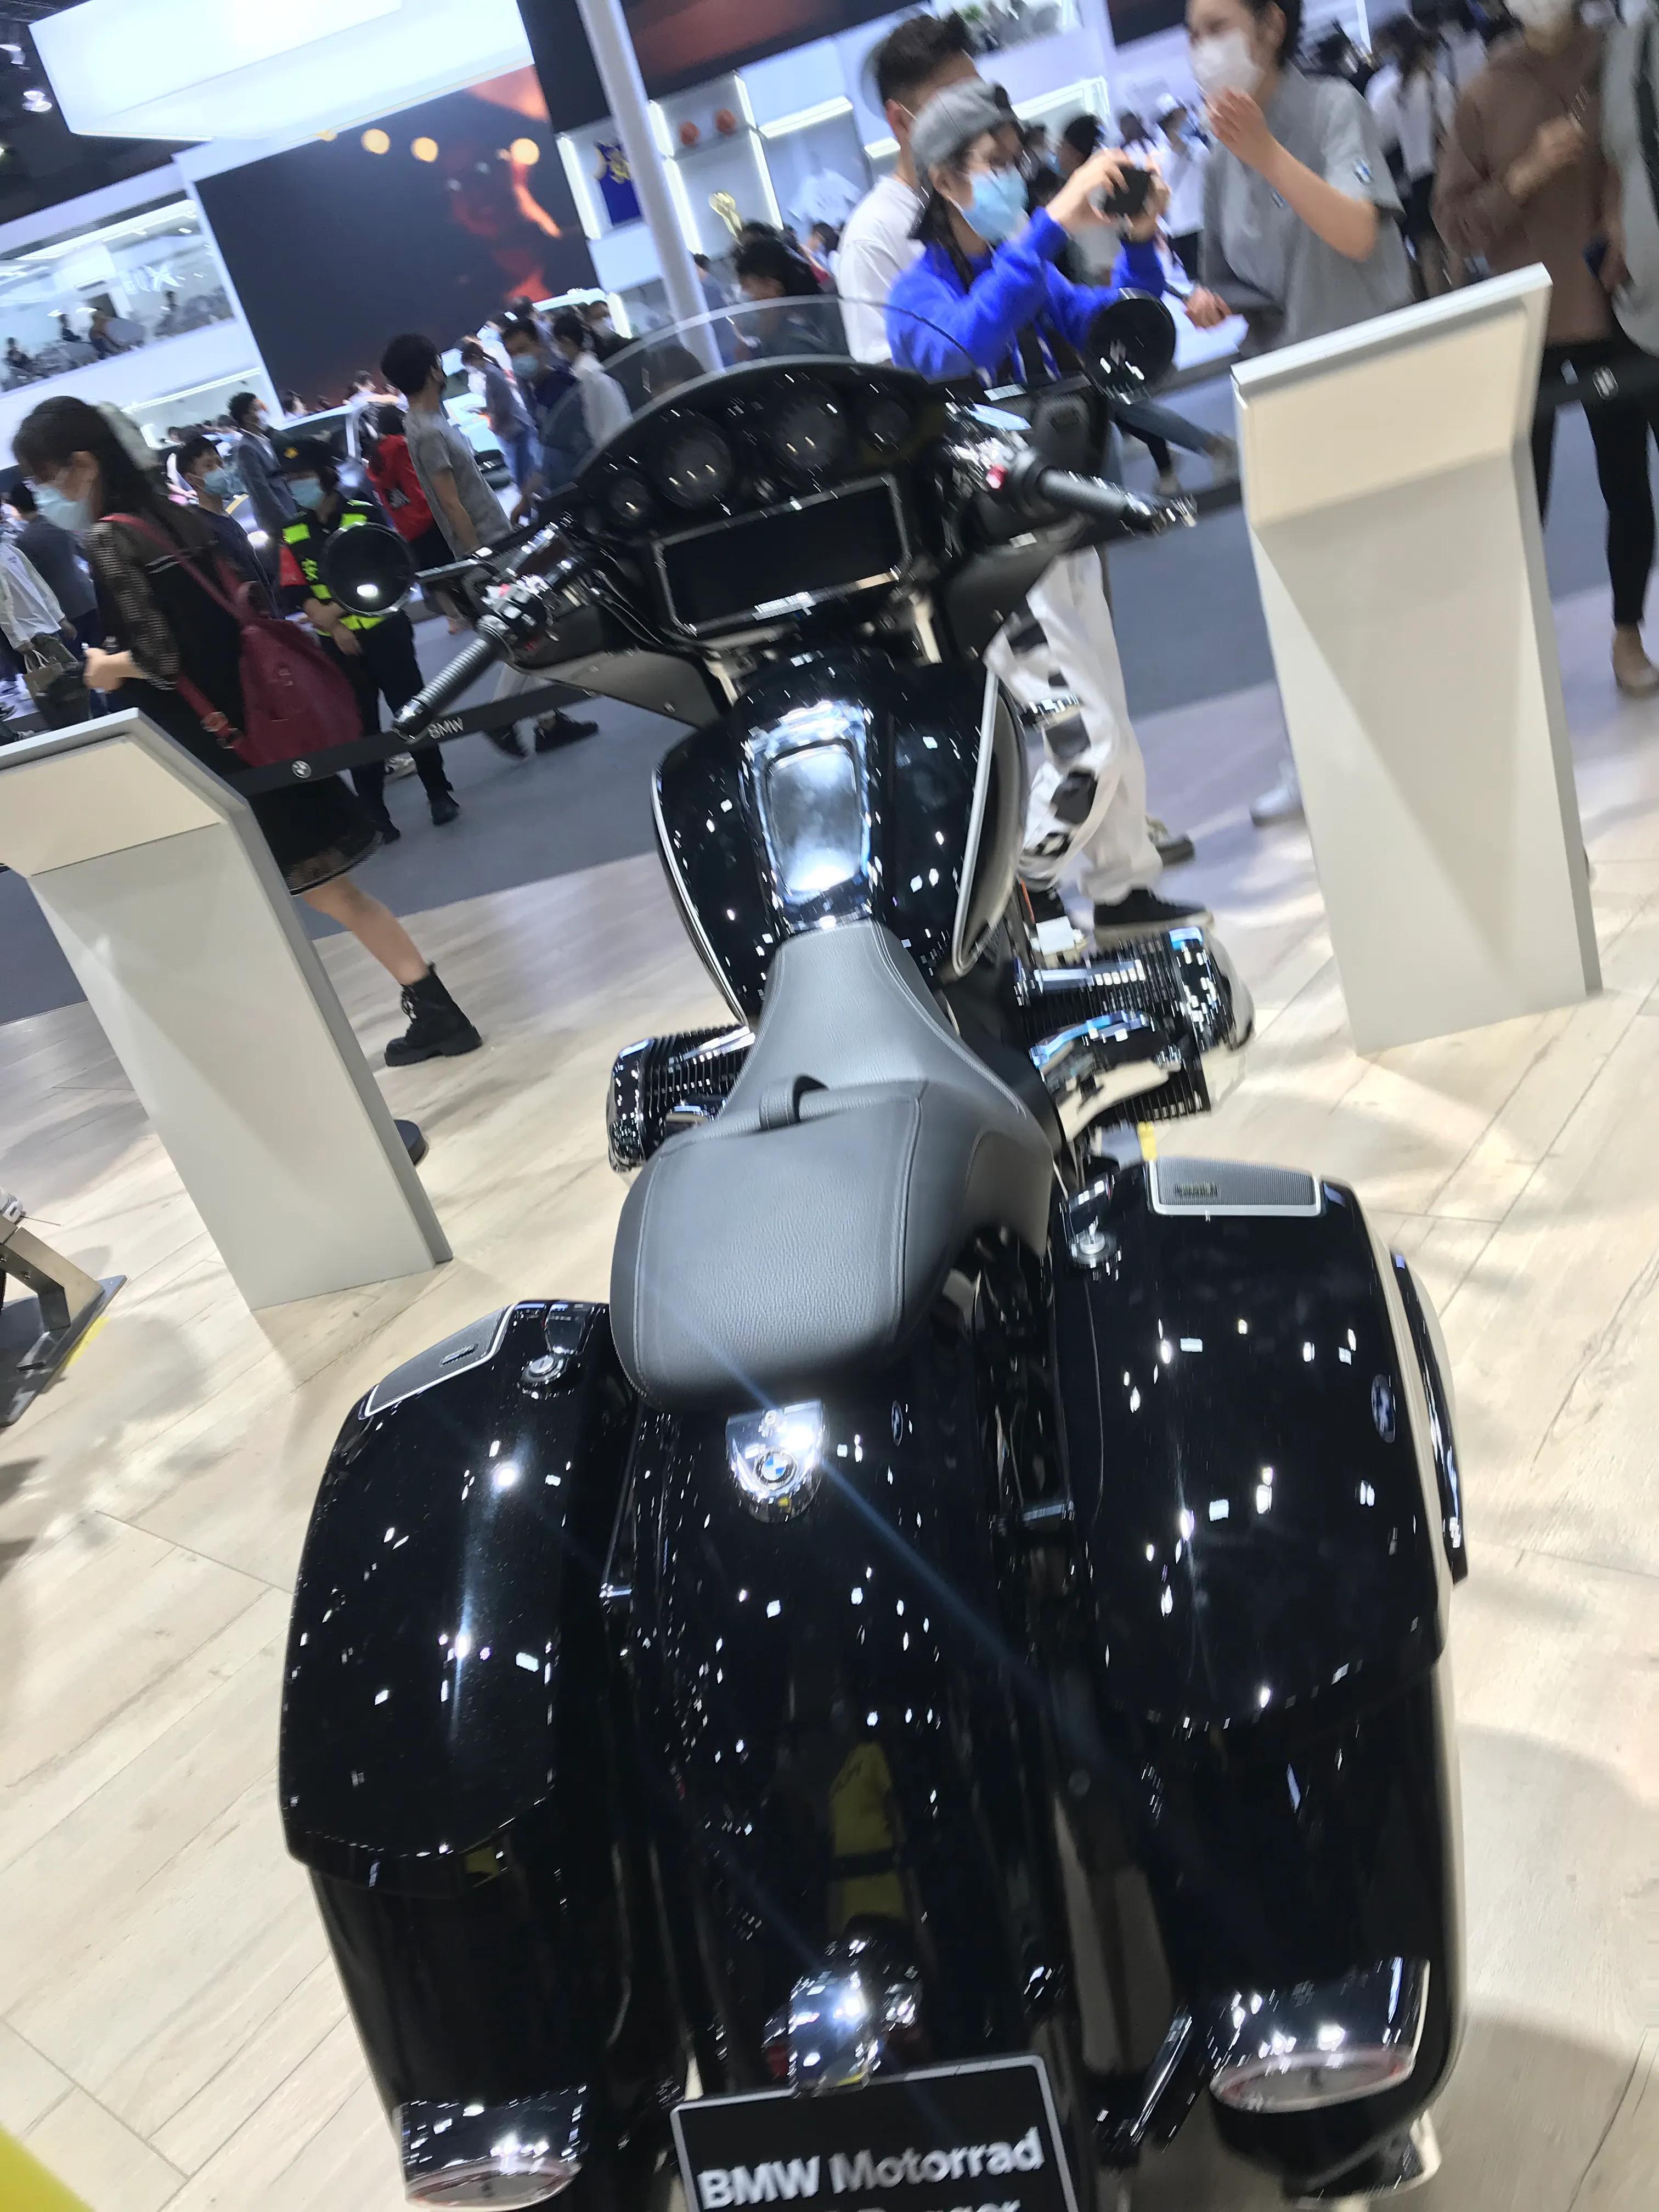 广州车展:40万以上的宝马r18新款摩托展出,哈雷机车能接招吗?